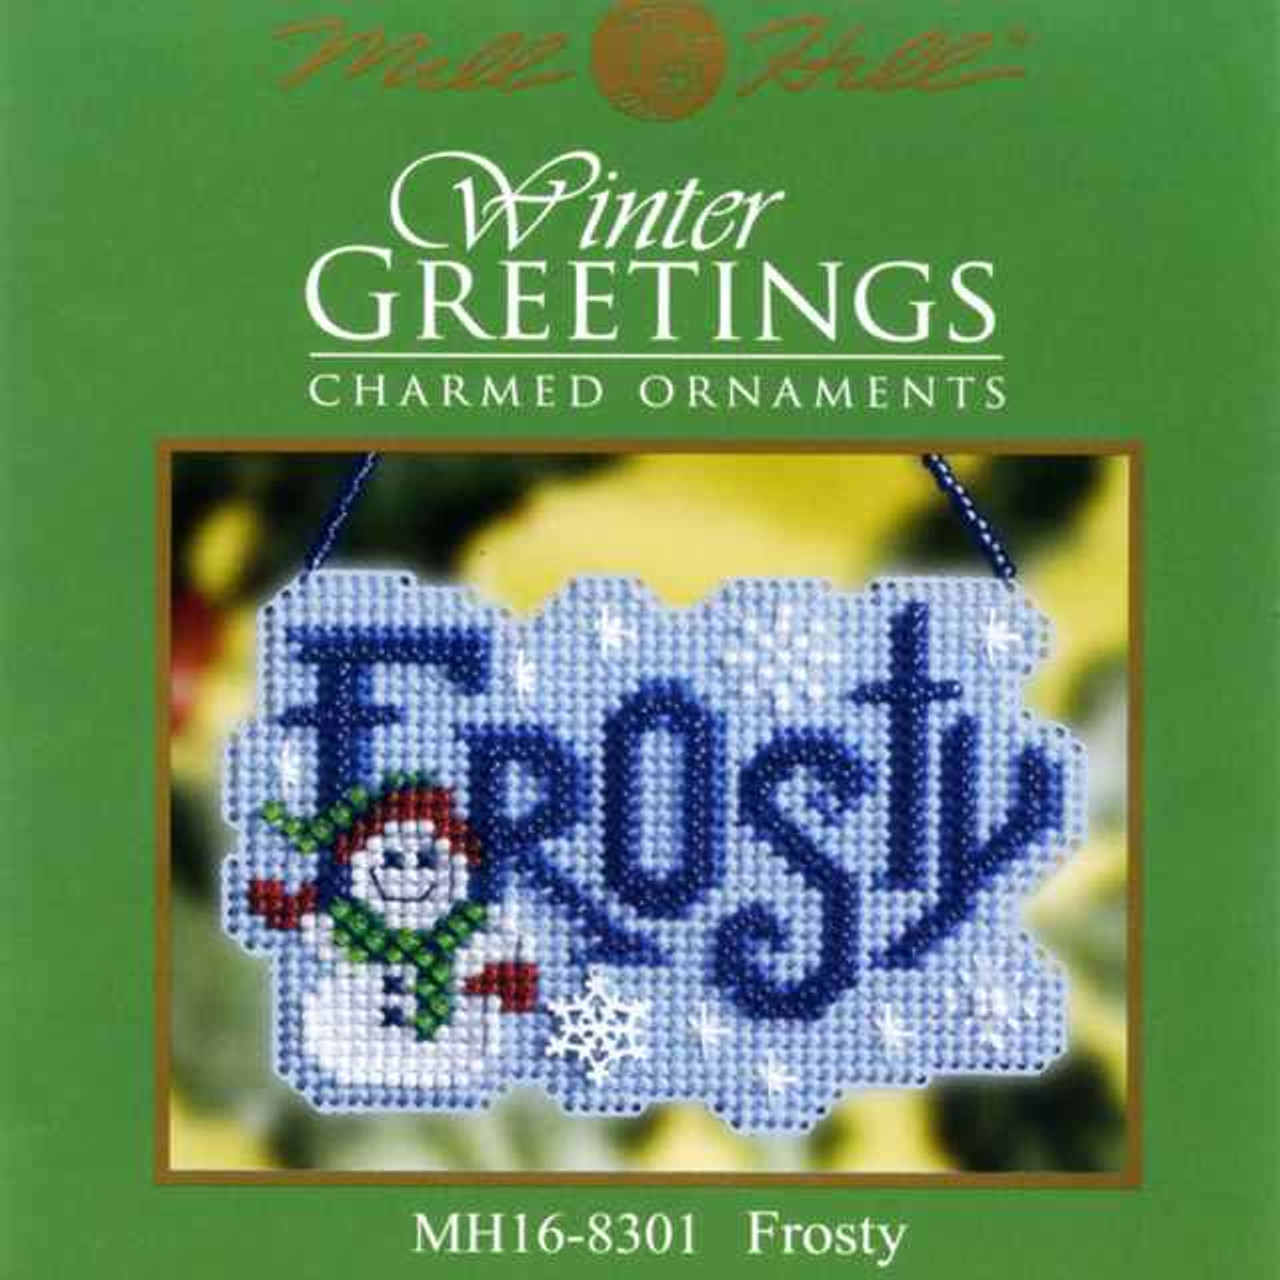 Frosty Bead Cross Stitch Ornament Kit Mill Hill 2008 Winter Greetings